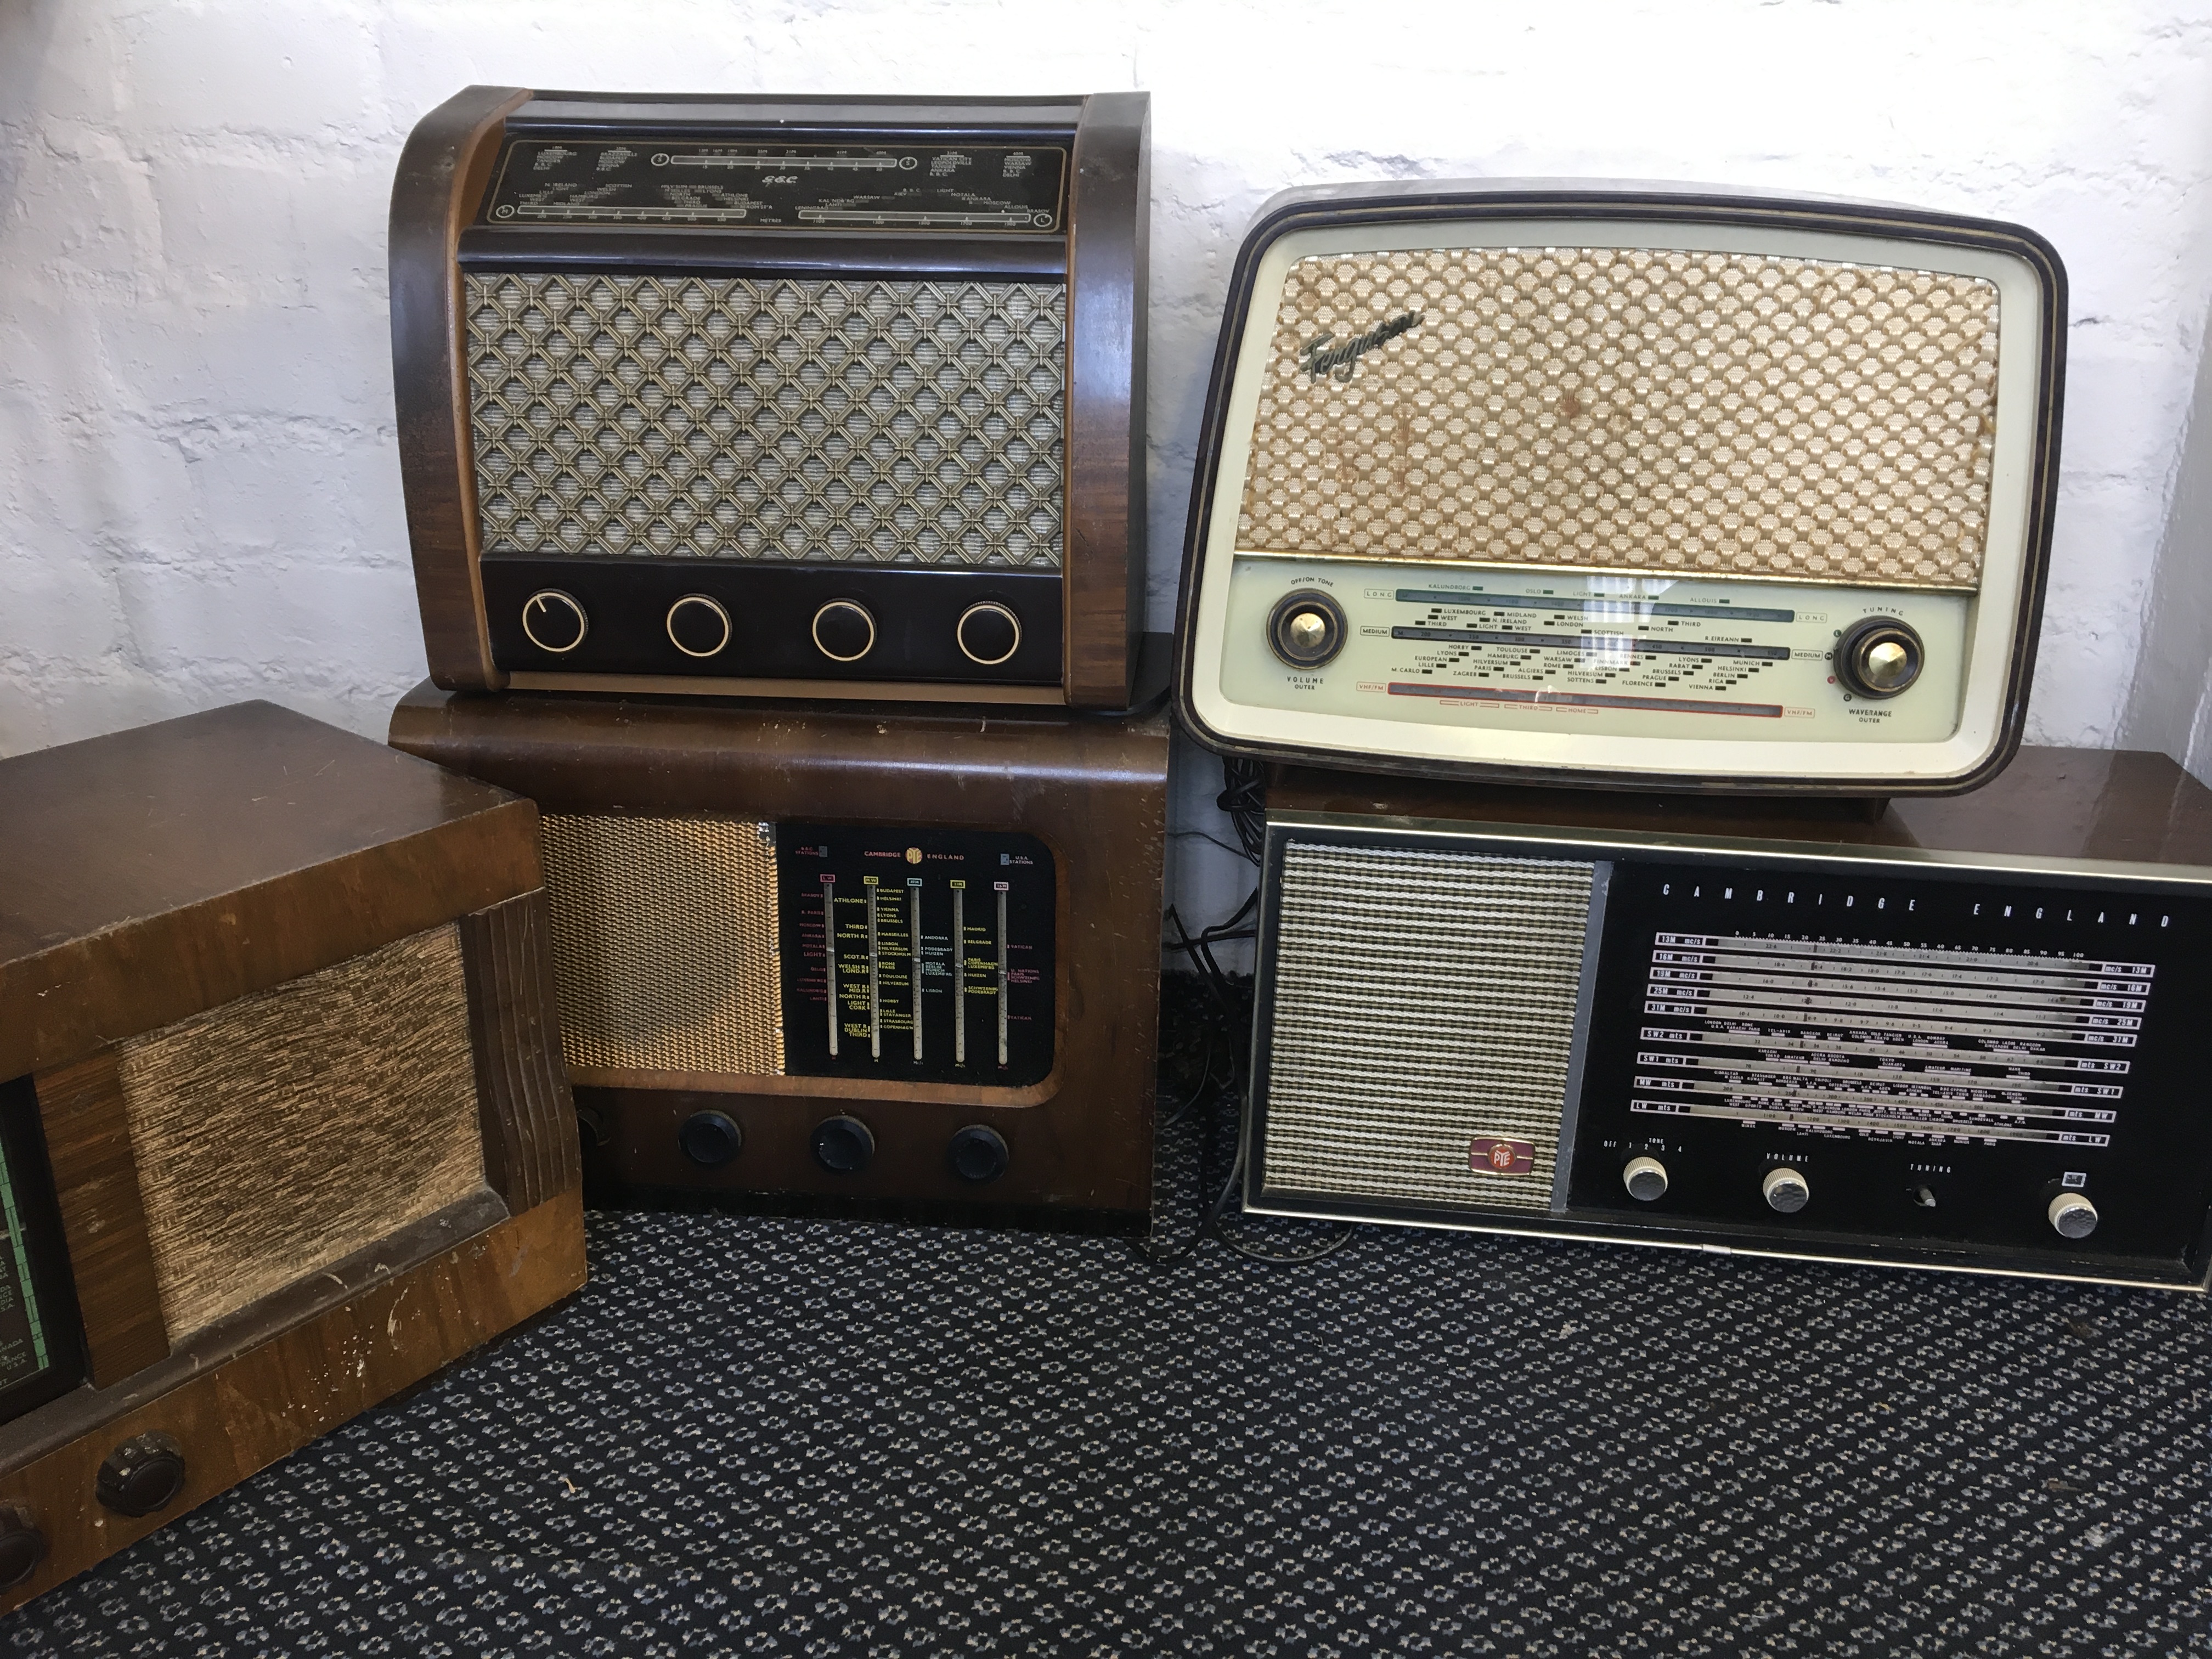 Five radios, including a Ferguson Thorn 382U, G.E.C. BC5445, PYE Cambridge 1101A, PYE Cambridge